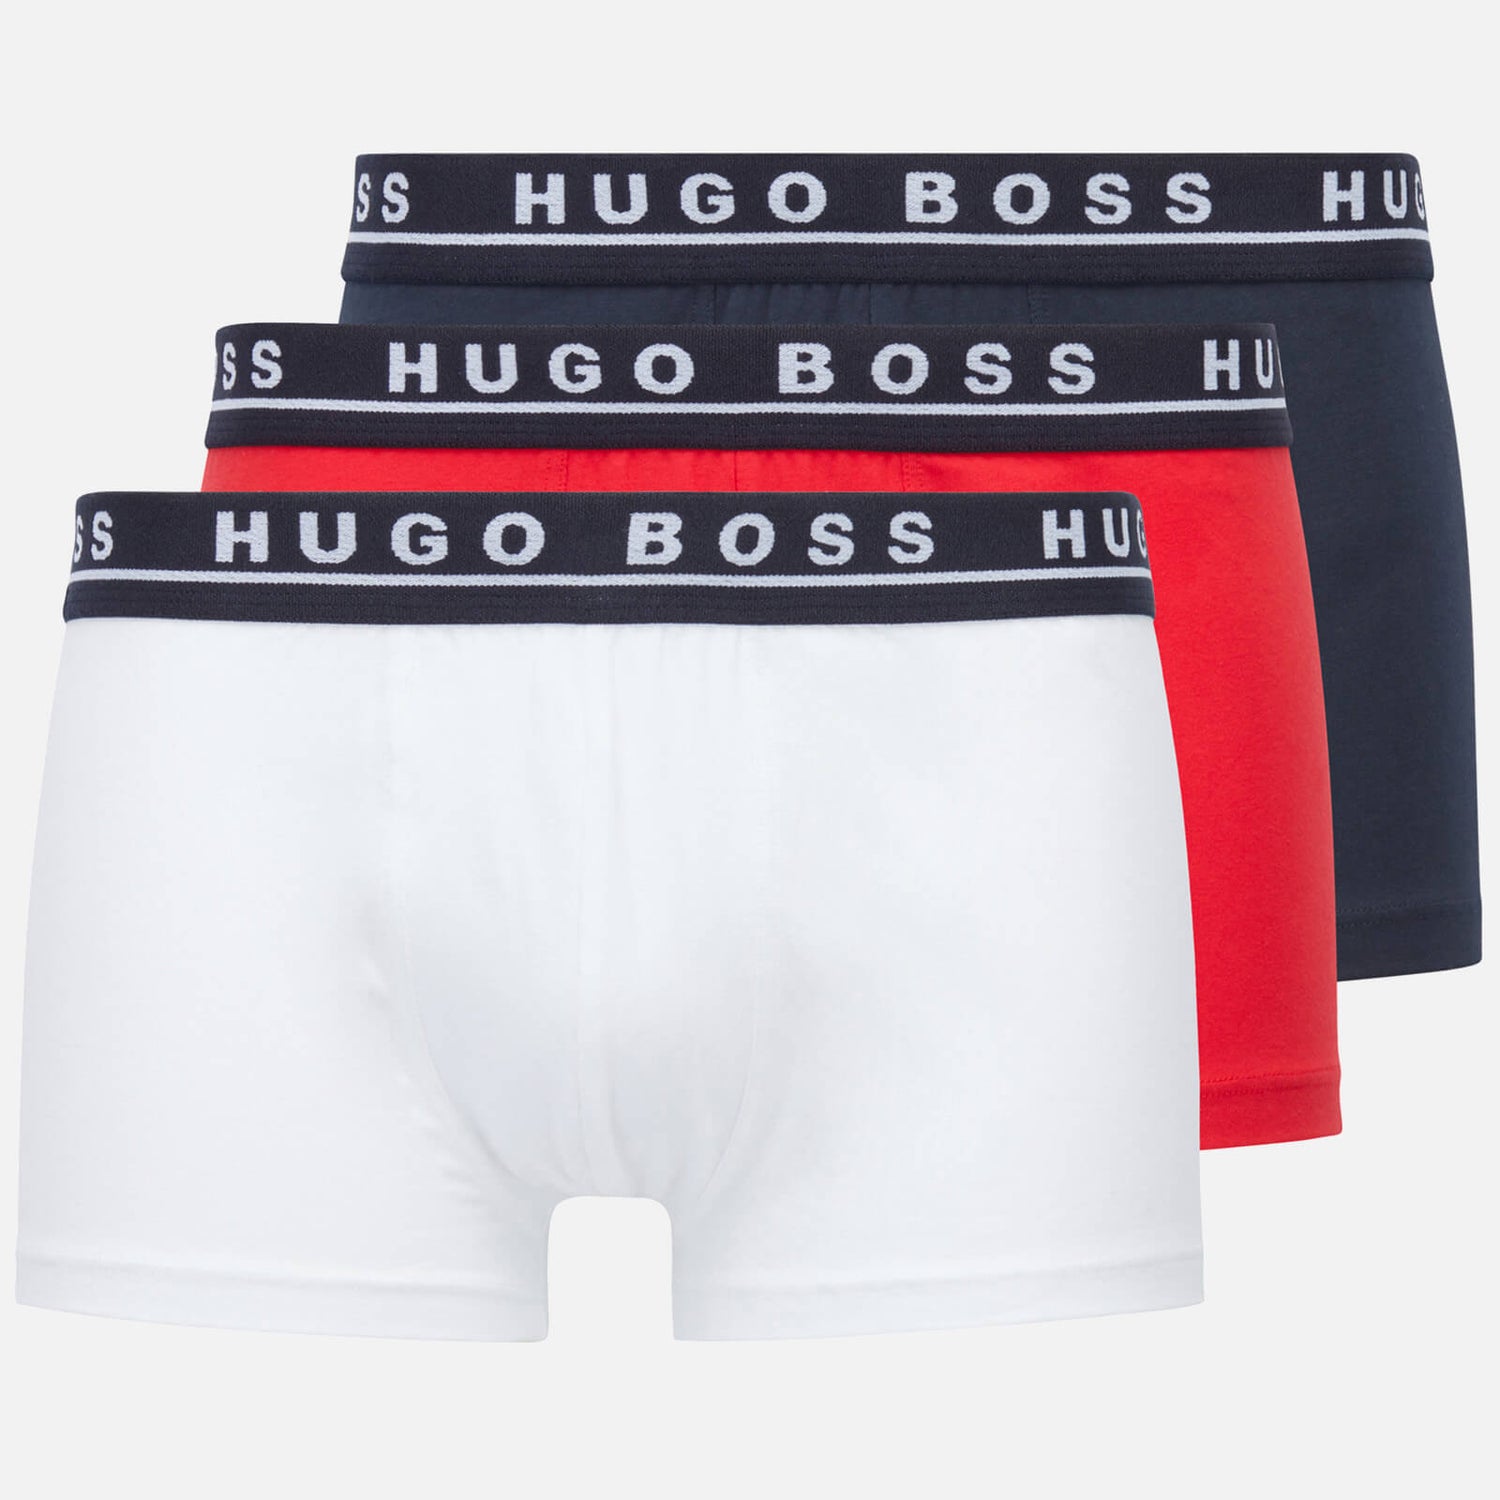 BOSS Bodywear Men's 3-Pack Contrast Waistband Trunks - Black/Red/White - S